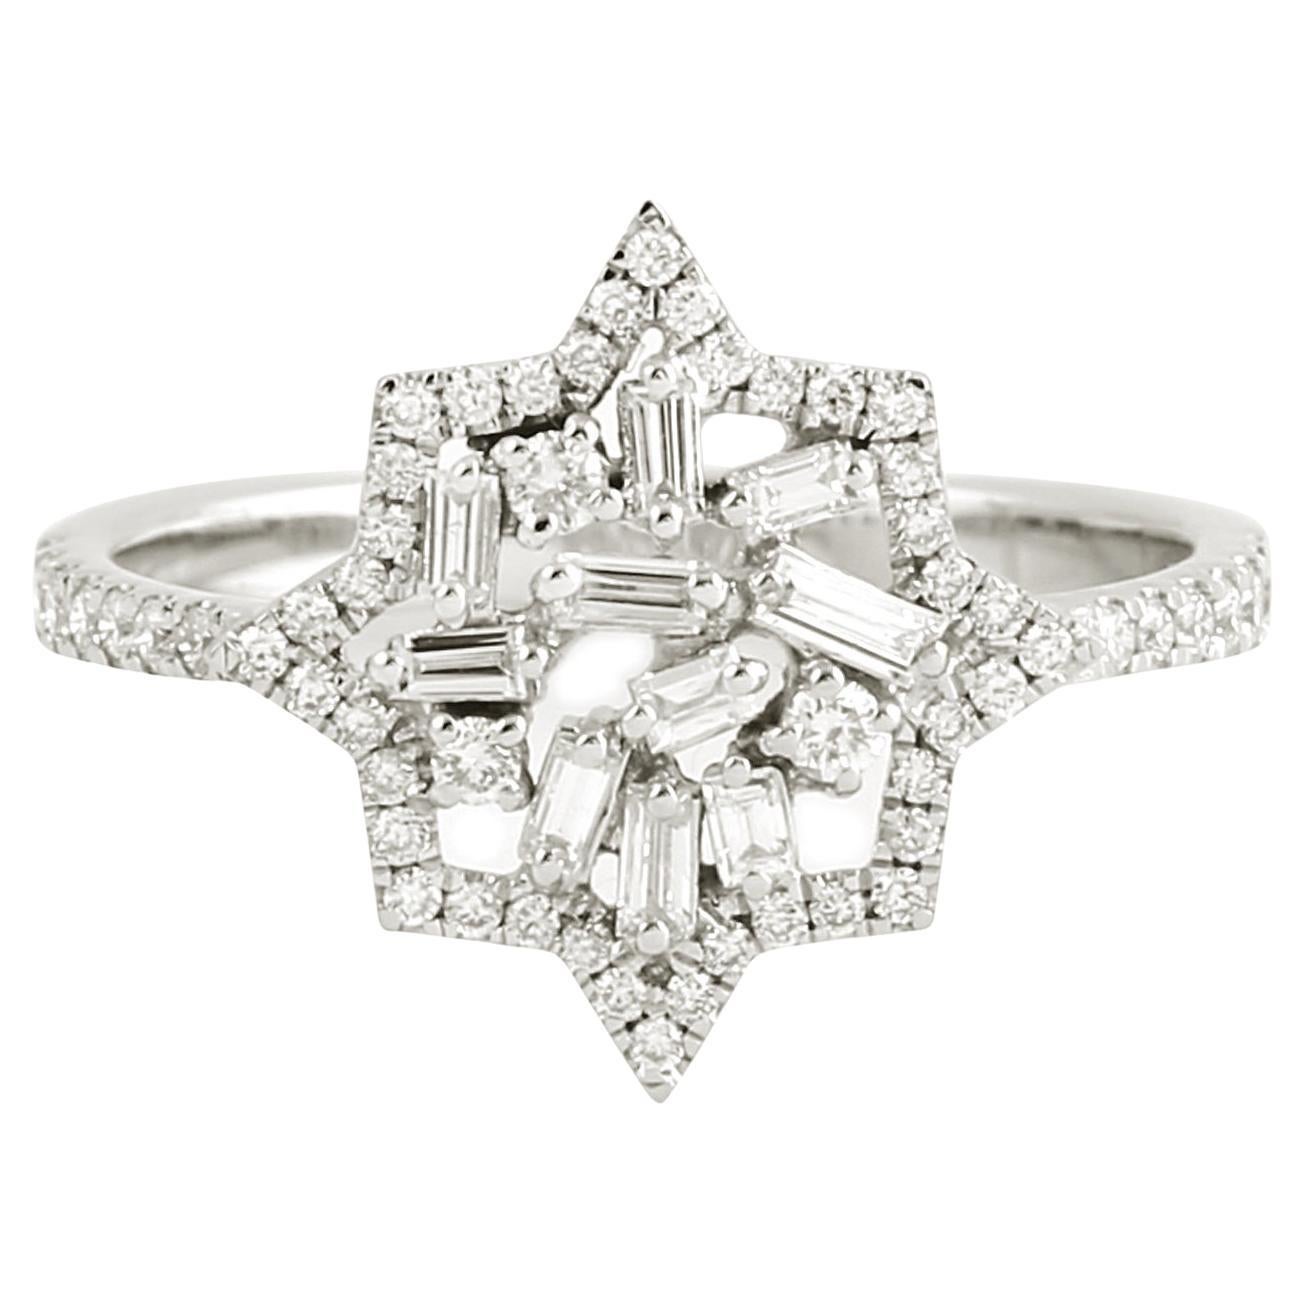 Starburst Baguette Diamond Ring Made In 18k White Gold For Sale